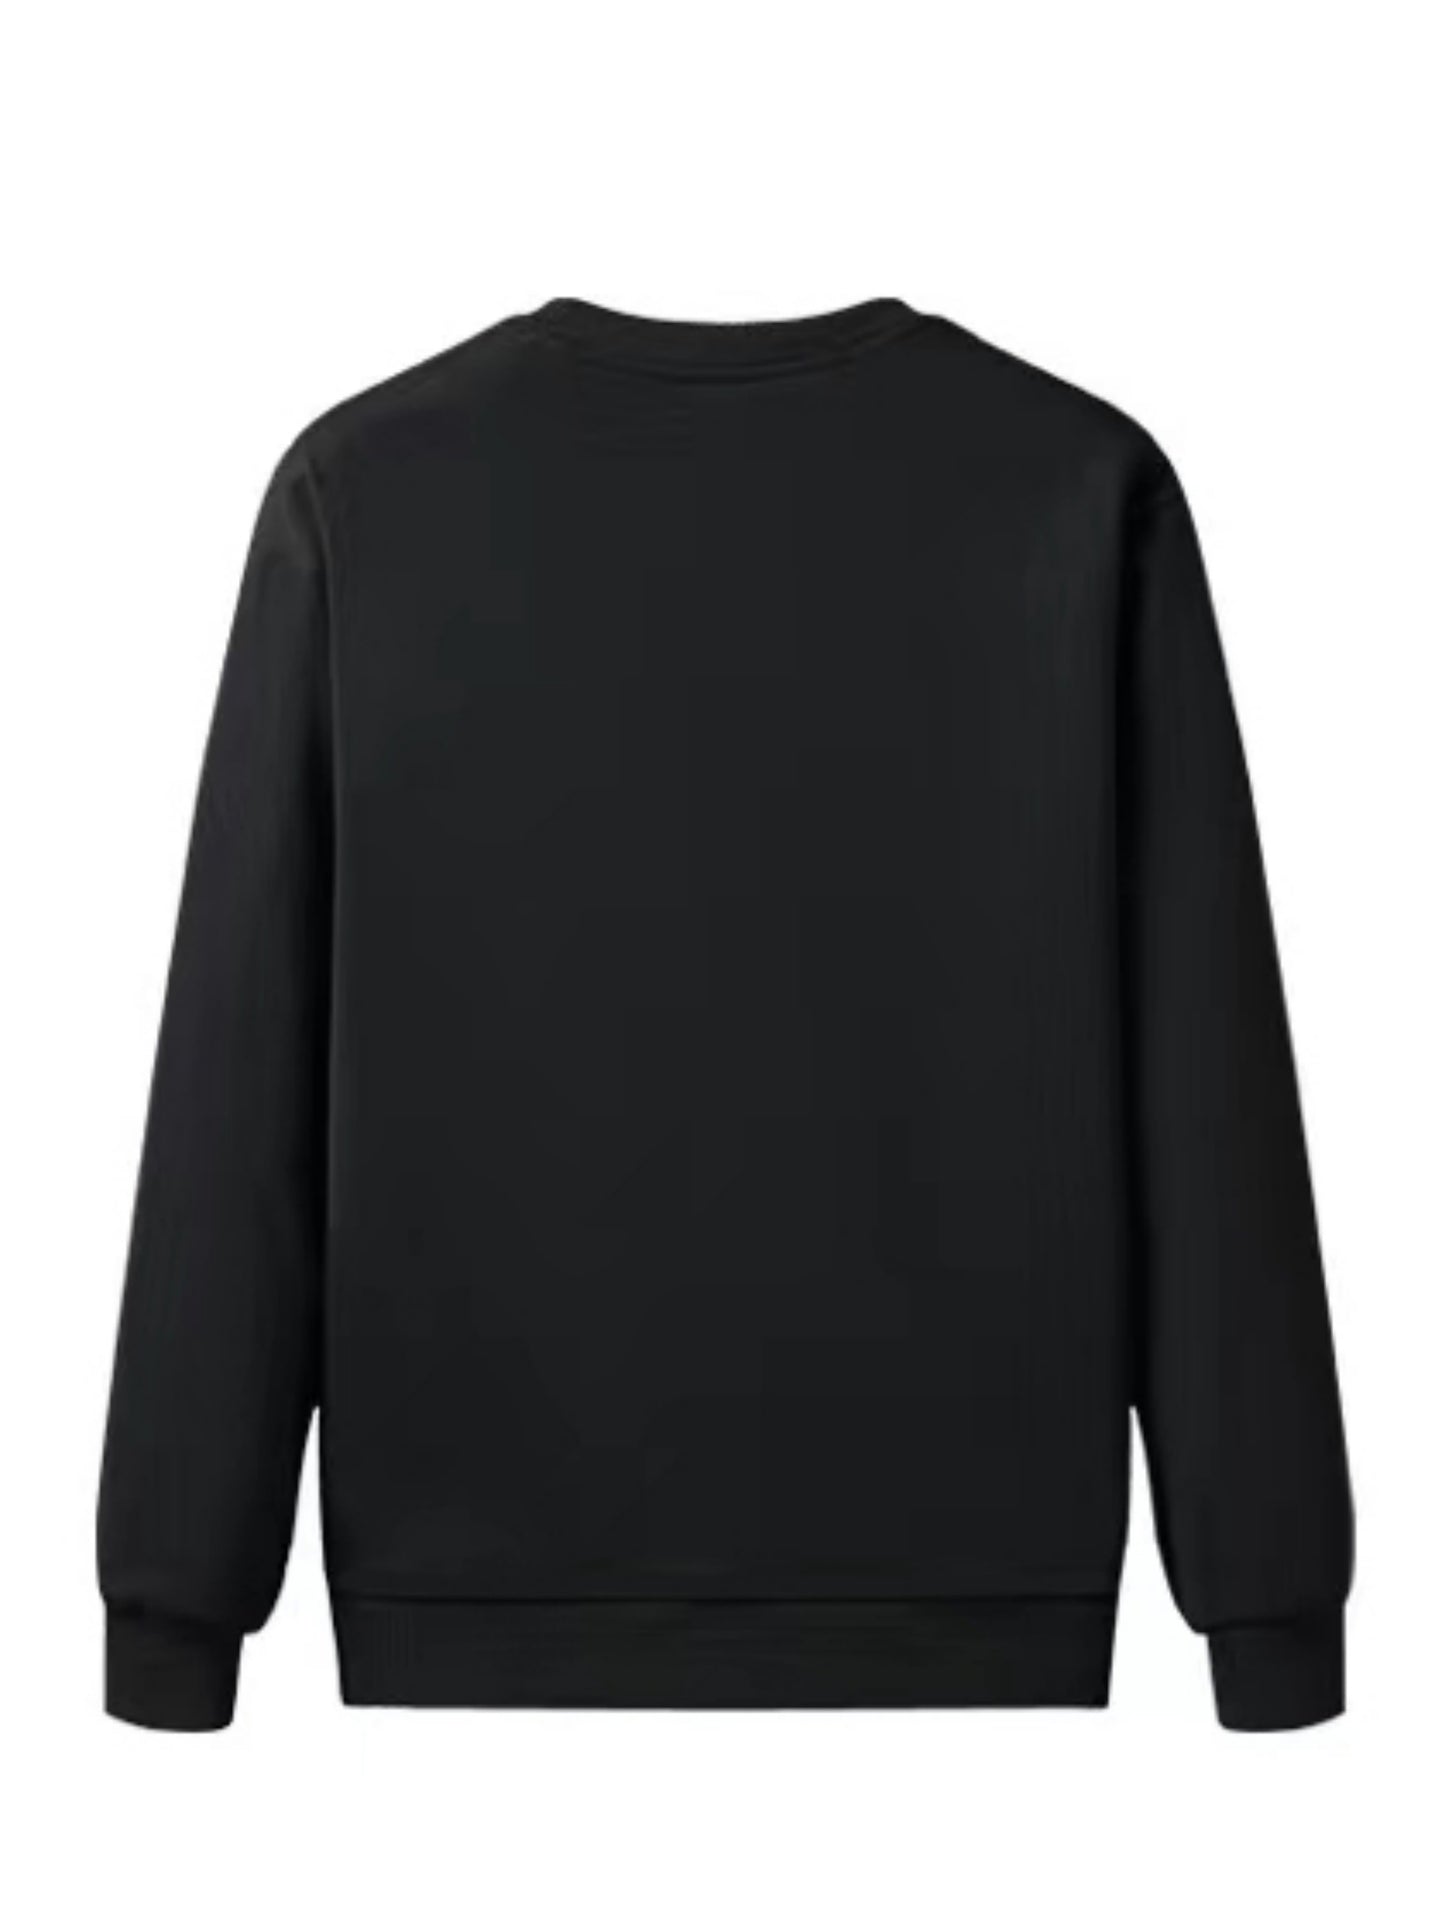 Thermal Trendy Fleece Sweatshirt, Men's Casual Classic Design Crew Neck Sweatshirt For Men Fall Winter